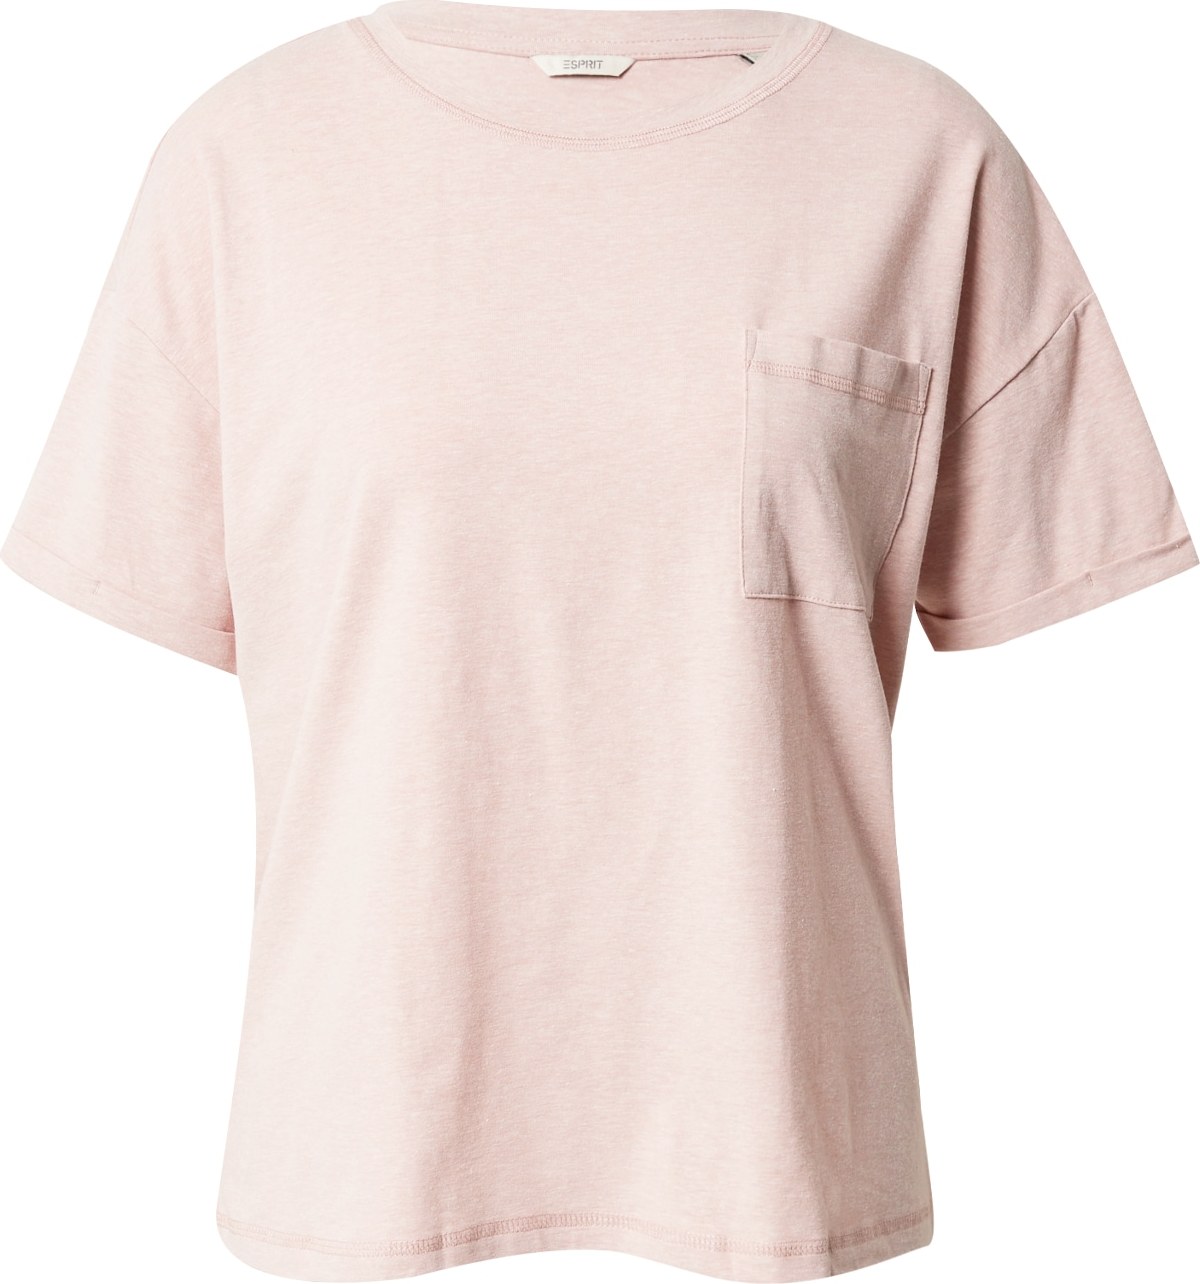 ESPRIT Tričko na spaní pastelově růžová